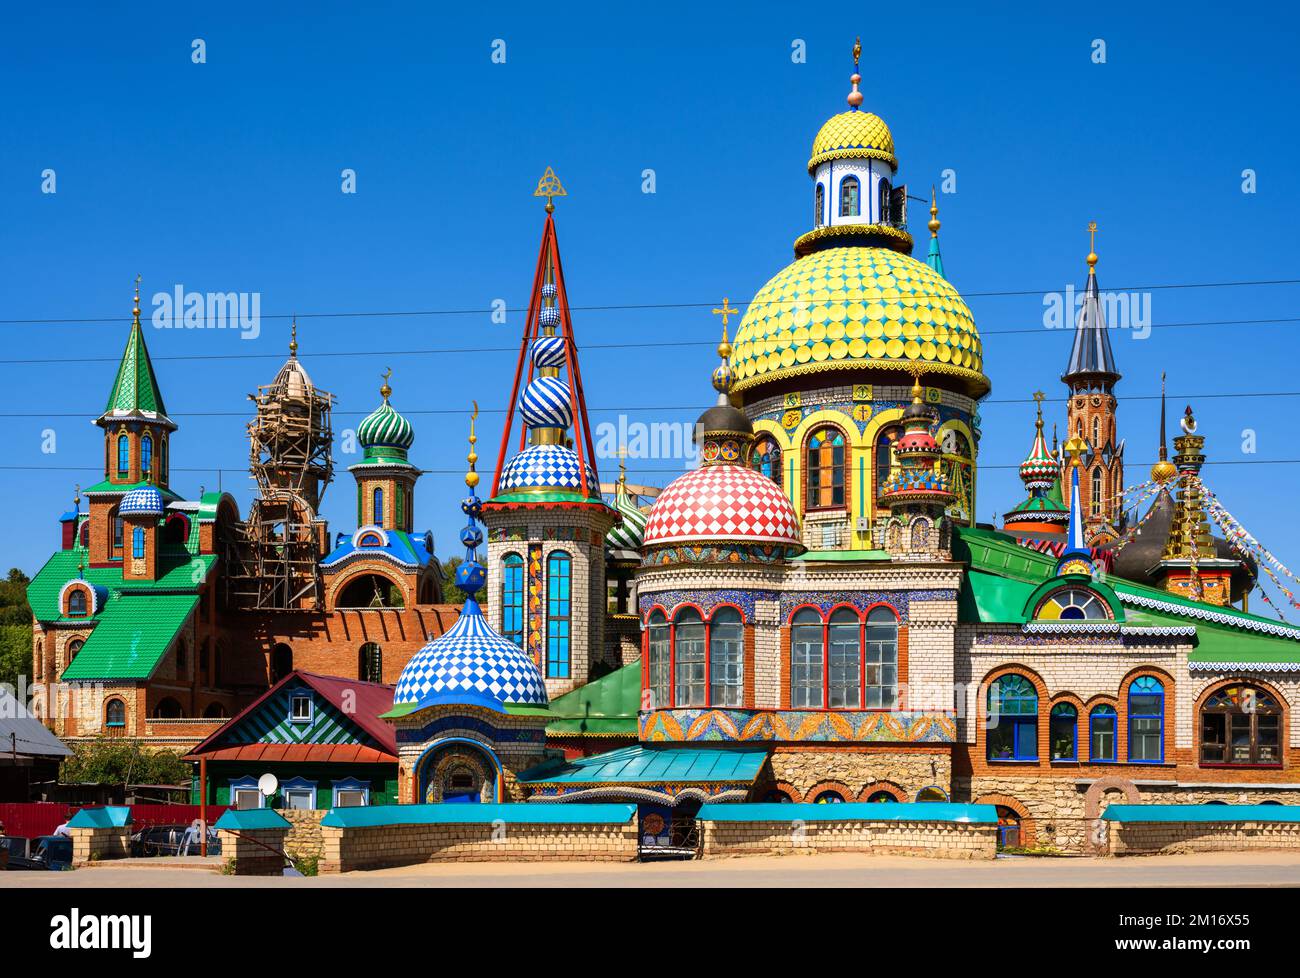 Tutte le religioni tempio in Kazan, Tatarstan, Russia. È il punto di riferimento di Kazan. Panorama di bellissimo complesso colorato di chiese, moschee e altro luogo Foto Stock